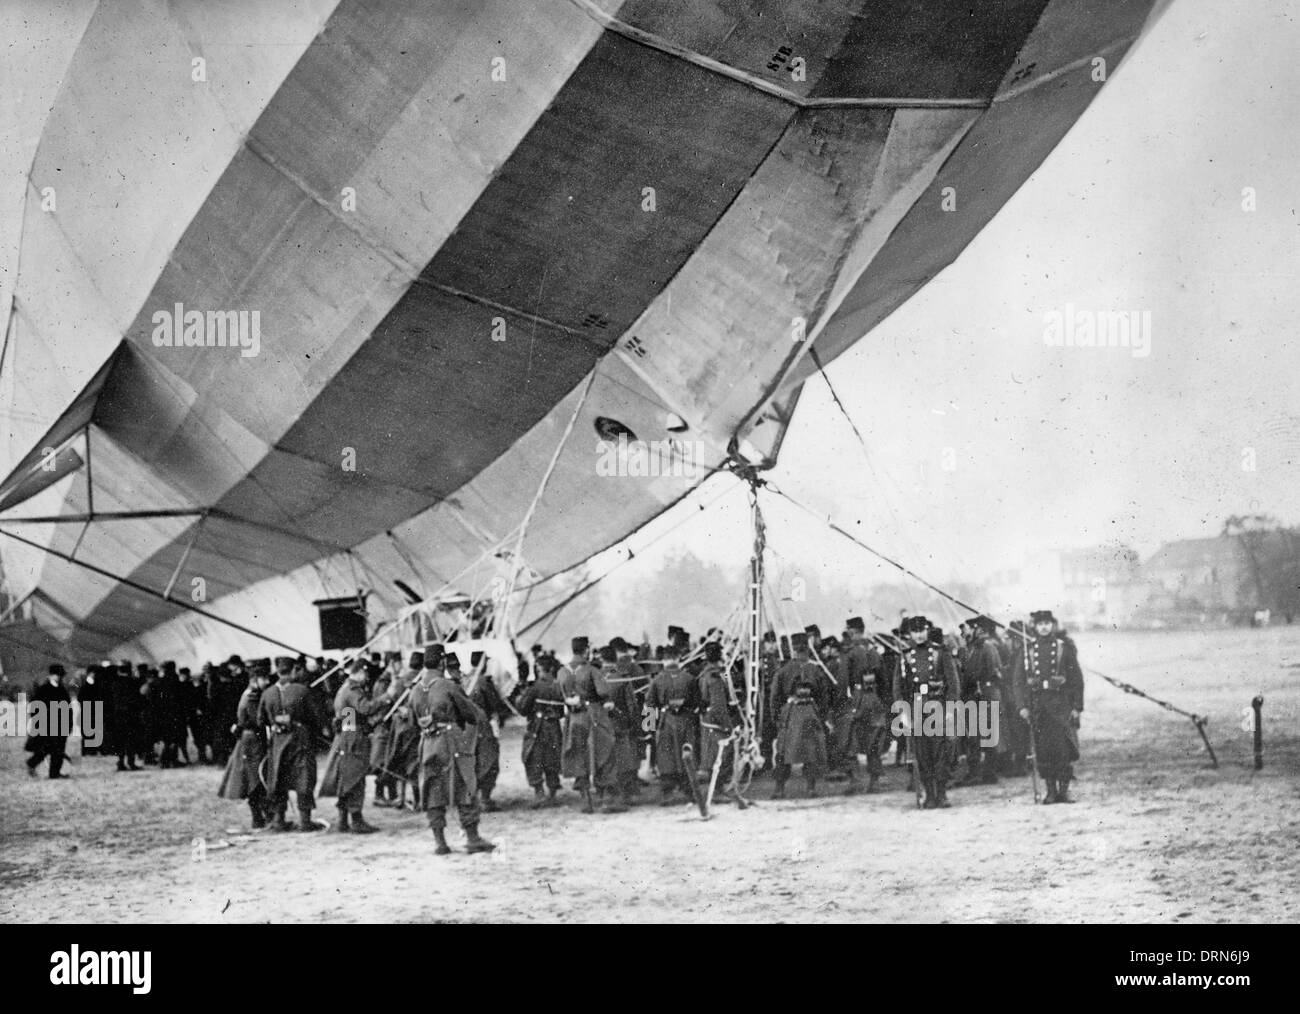 Deutsche Luftschiff, Zeppelin IV, die im April 1913 auf dem Exerzierplatz von Luneville, Frankreich gelandet. Stockfoto